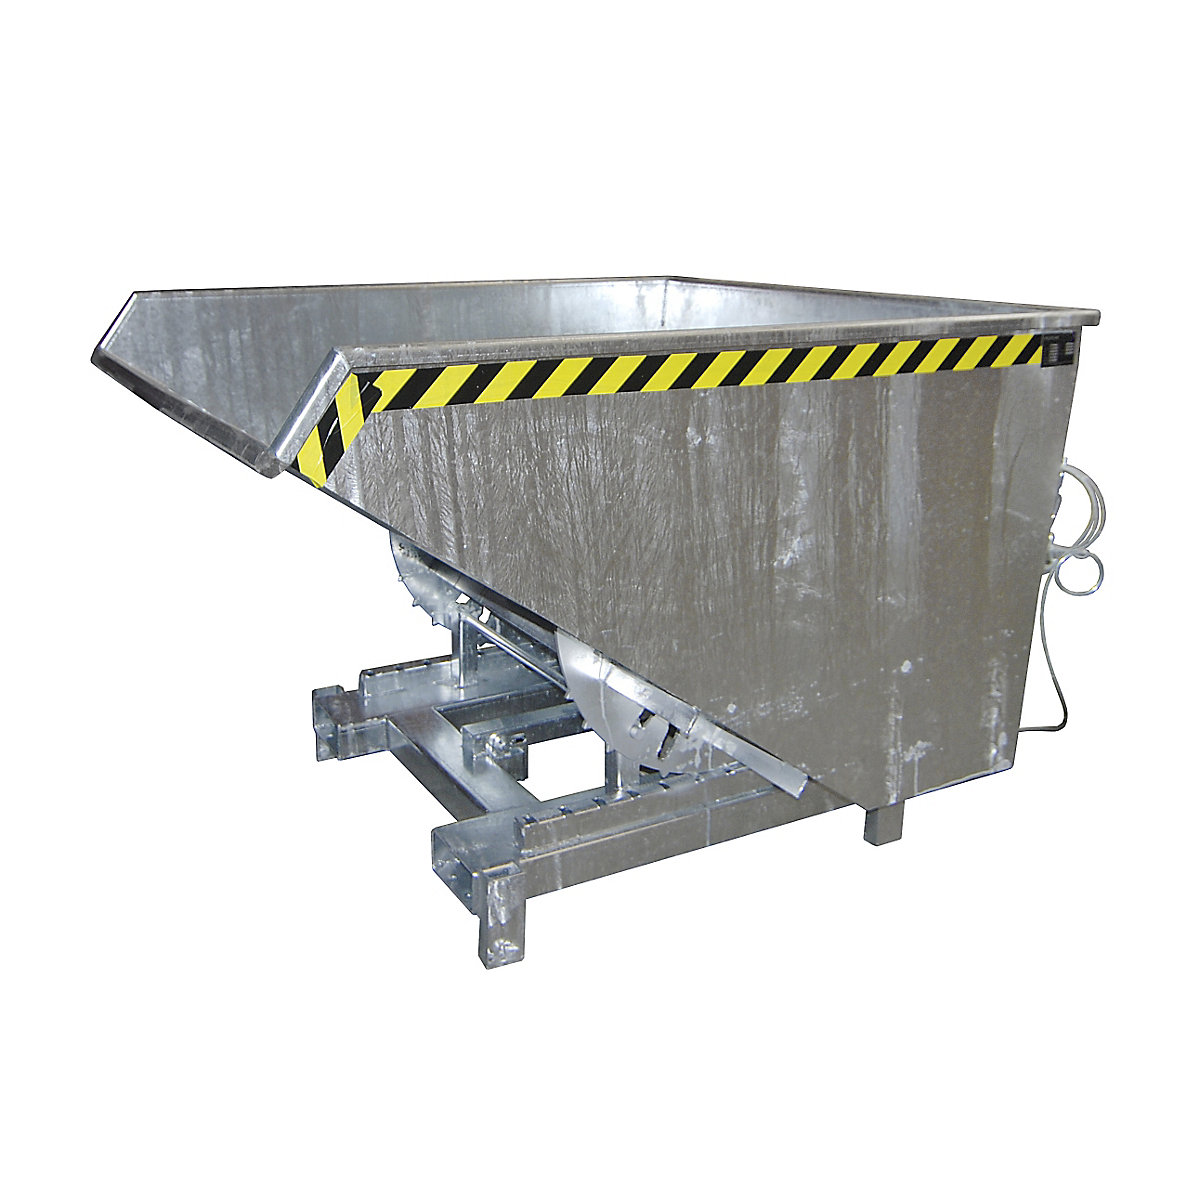 Recipiente basculante para cargas pesadas – eurokraft pro, volume 1,2 m³, capacidade de carga 4000 kg, galvanizado a fogo conforme EN ISO 1461-8